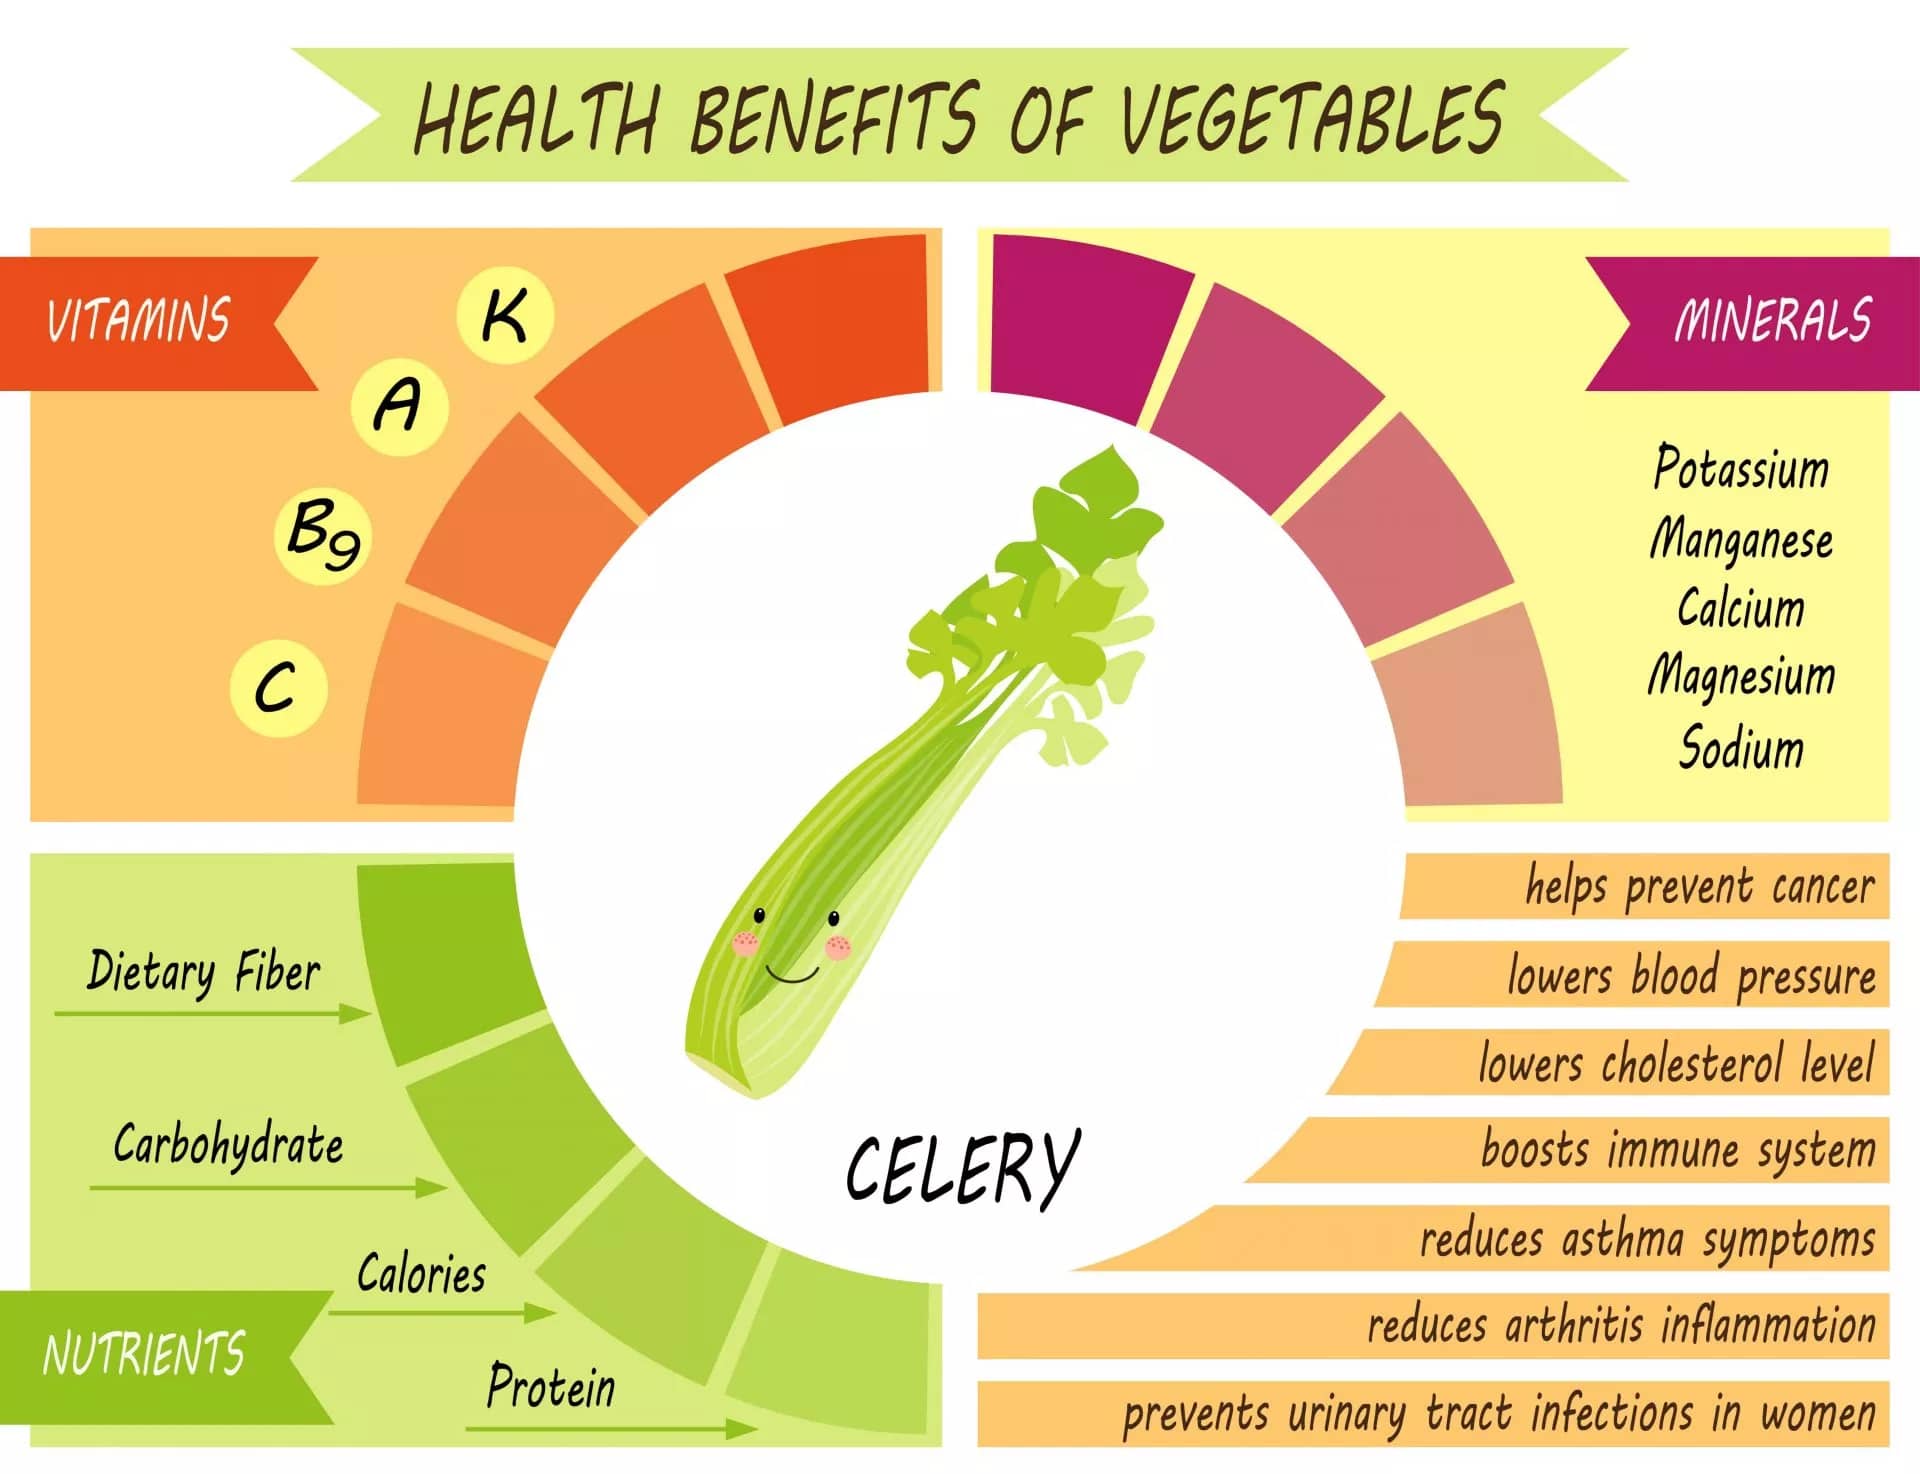 Celery Benefits infographic